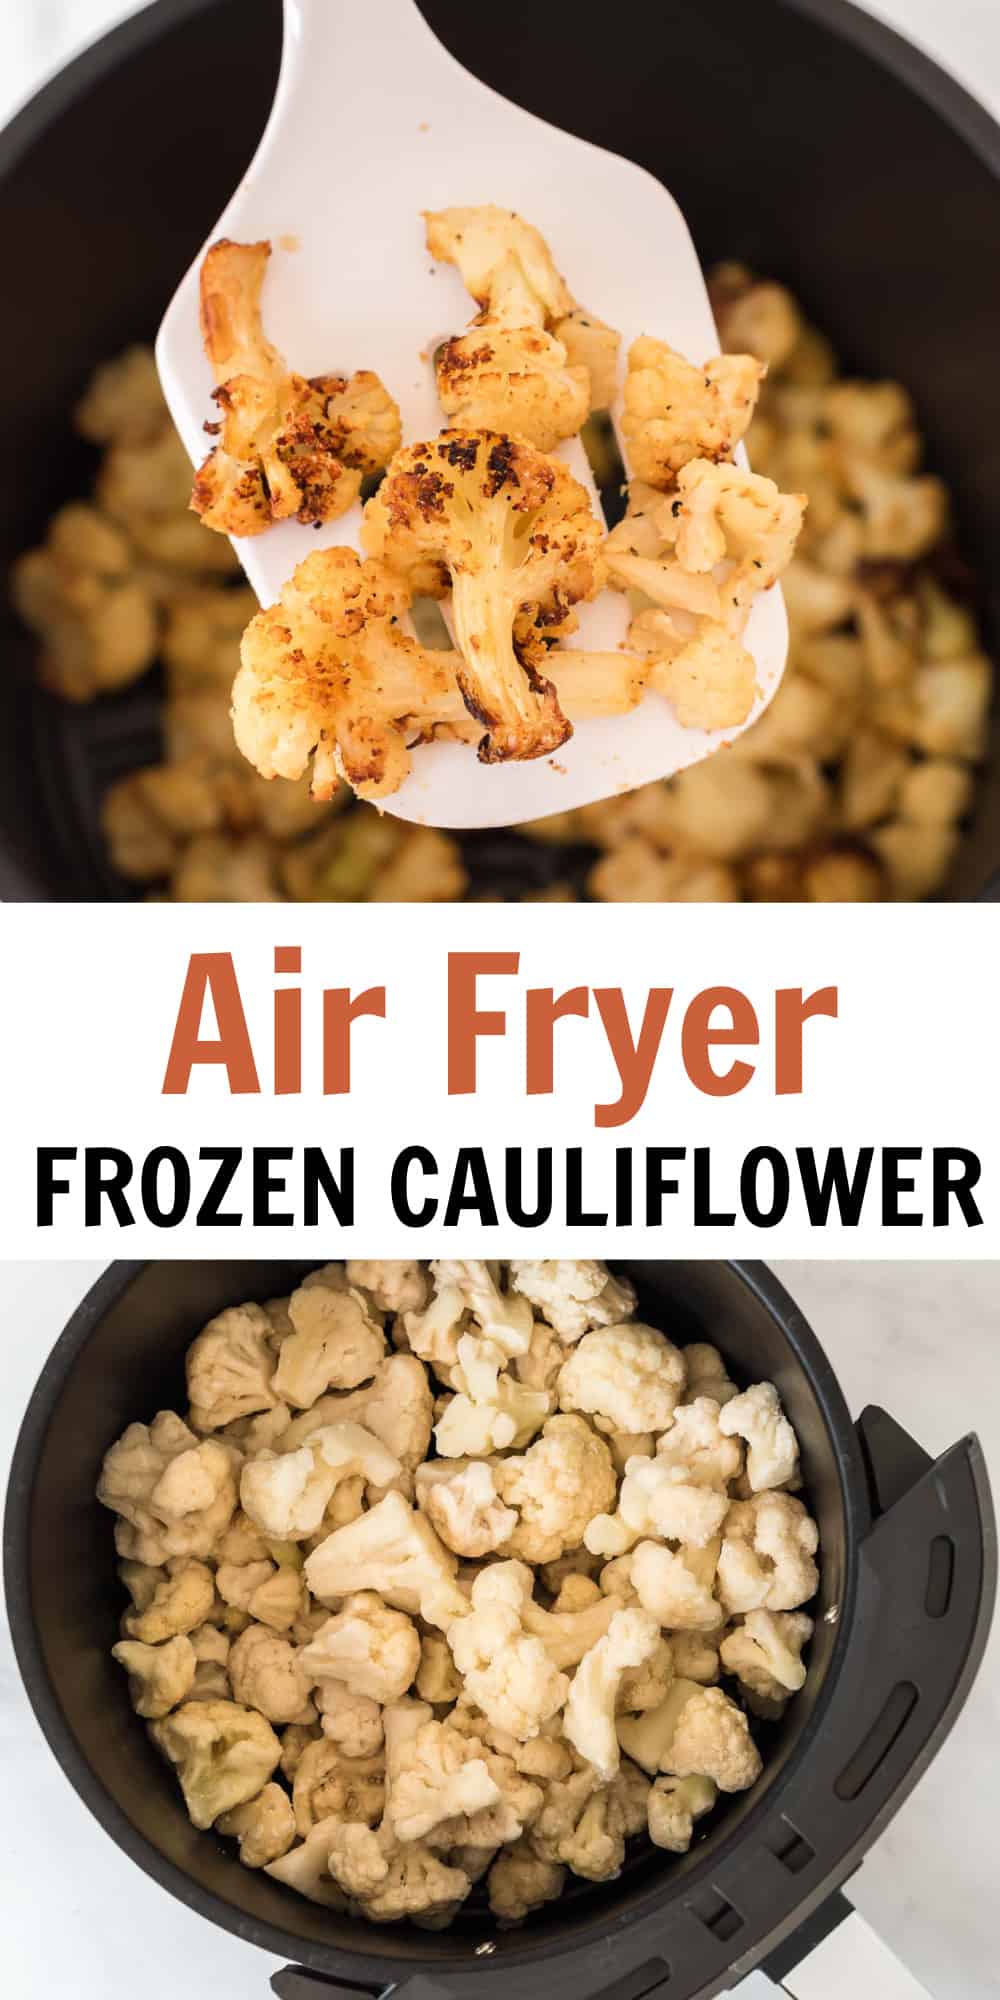 image with text "air fryer frozen cauliflower"